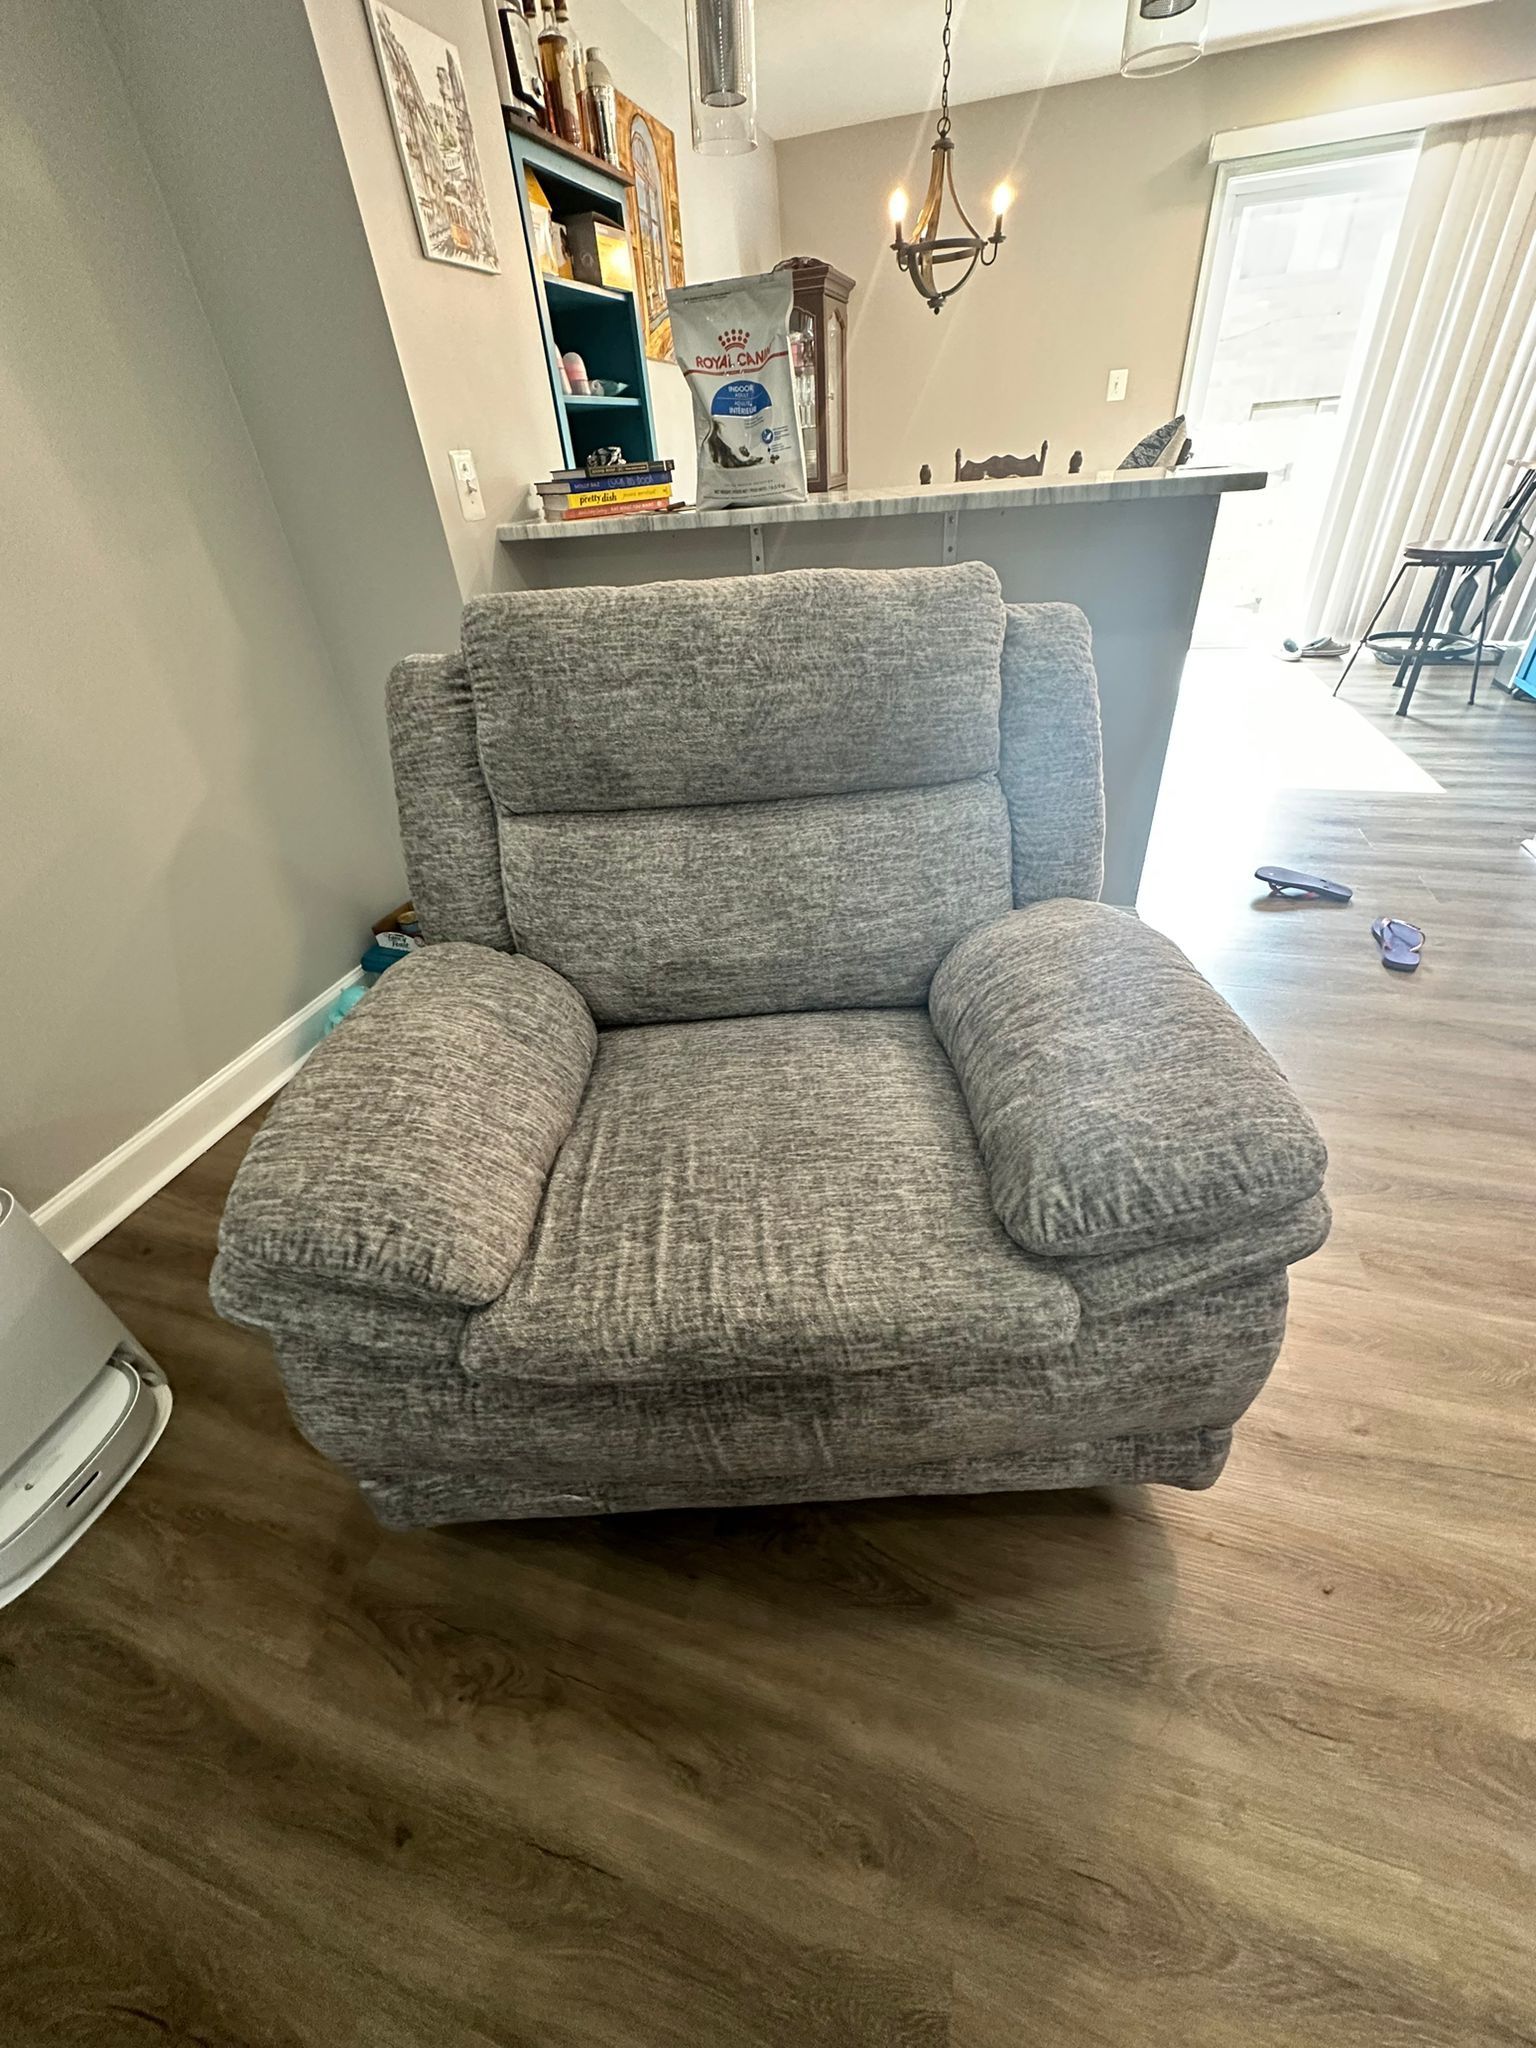 Free Sofa Chair